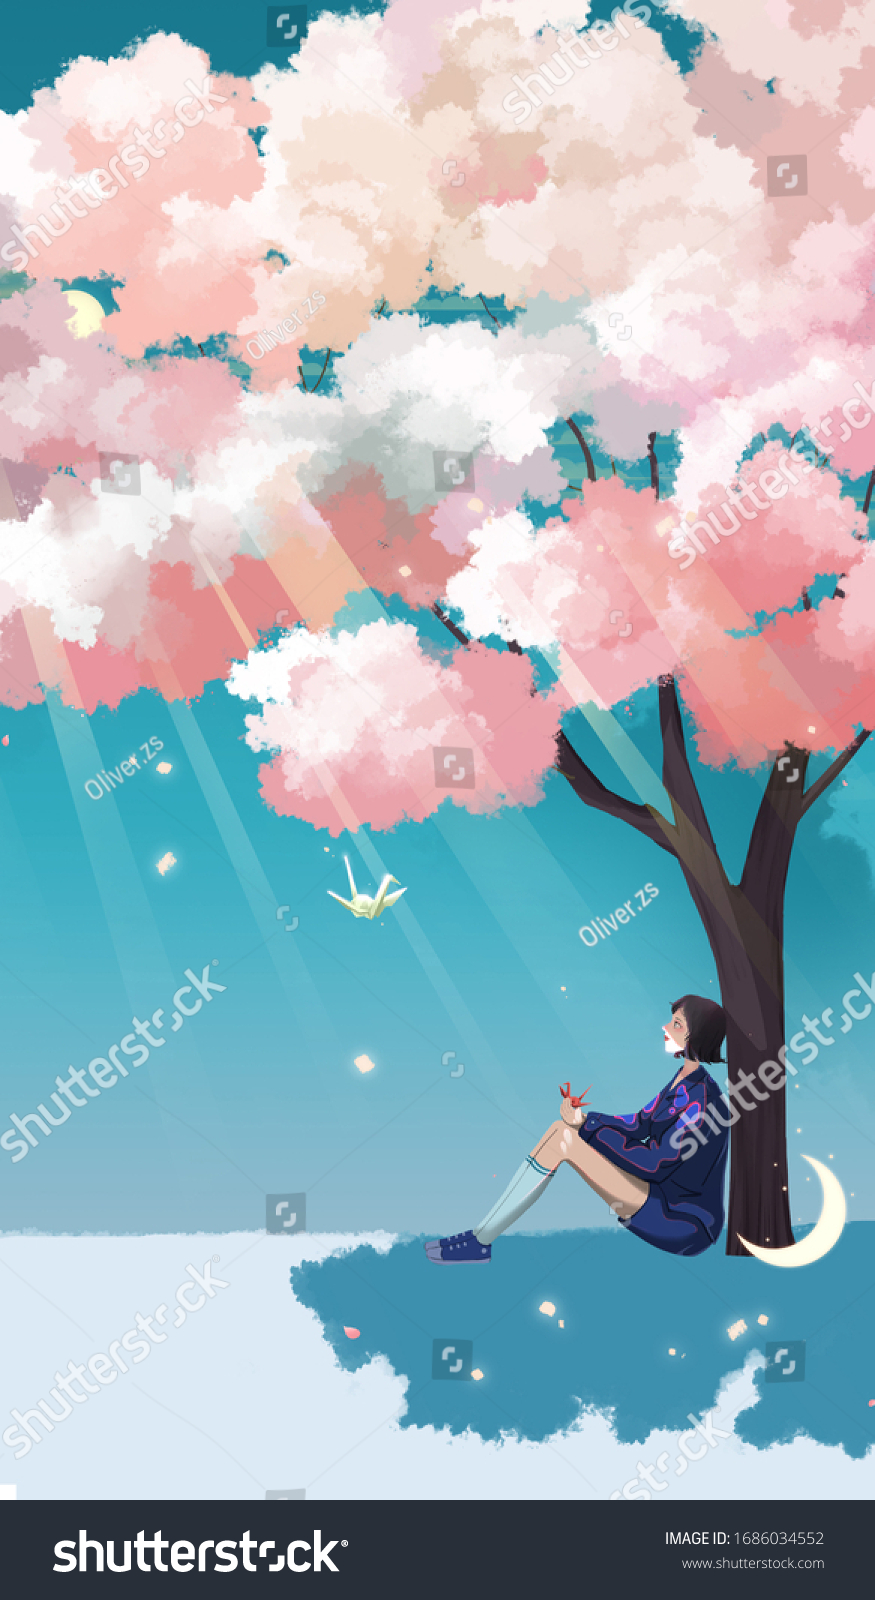 桜の木の下に座っている女の子は鶴を手に持っている 太陽の木と飛ぶ鶴 垂直イラスト のイラスト素材